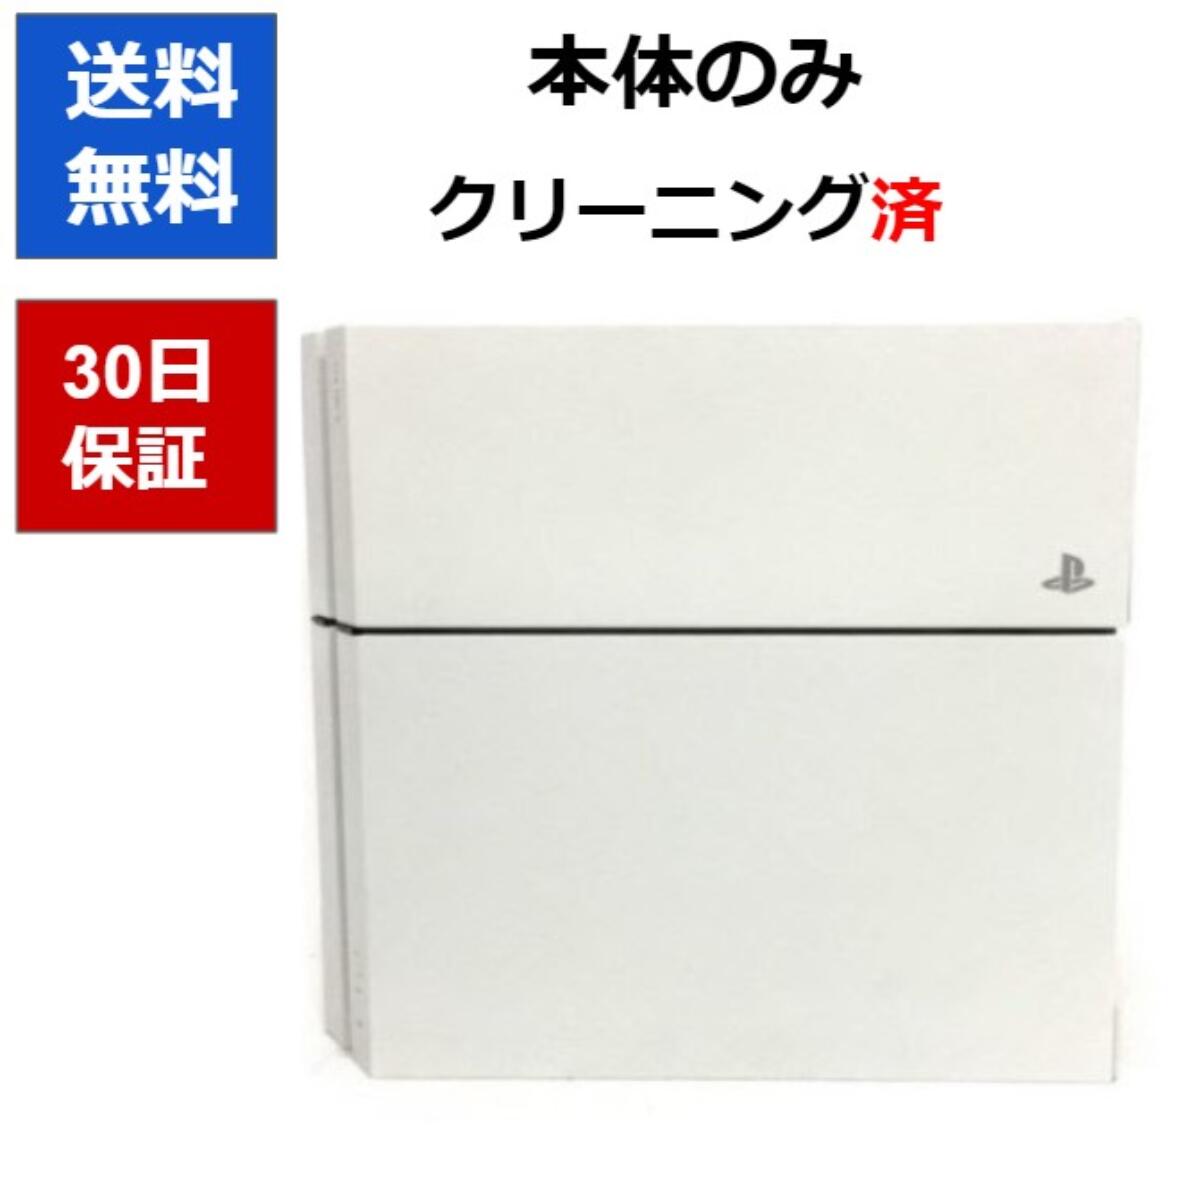 公式セール価格  CUH-1100AB02」 500GB 「PlayStation®4ホワイト 家庭用ゲーム本体